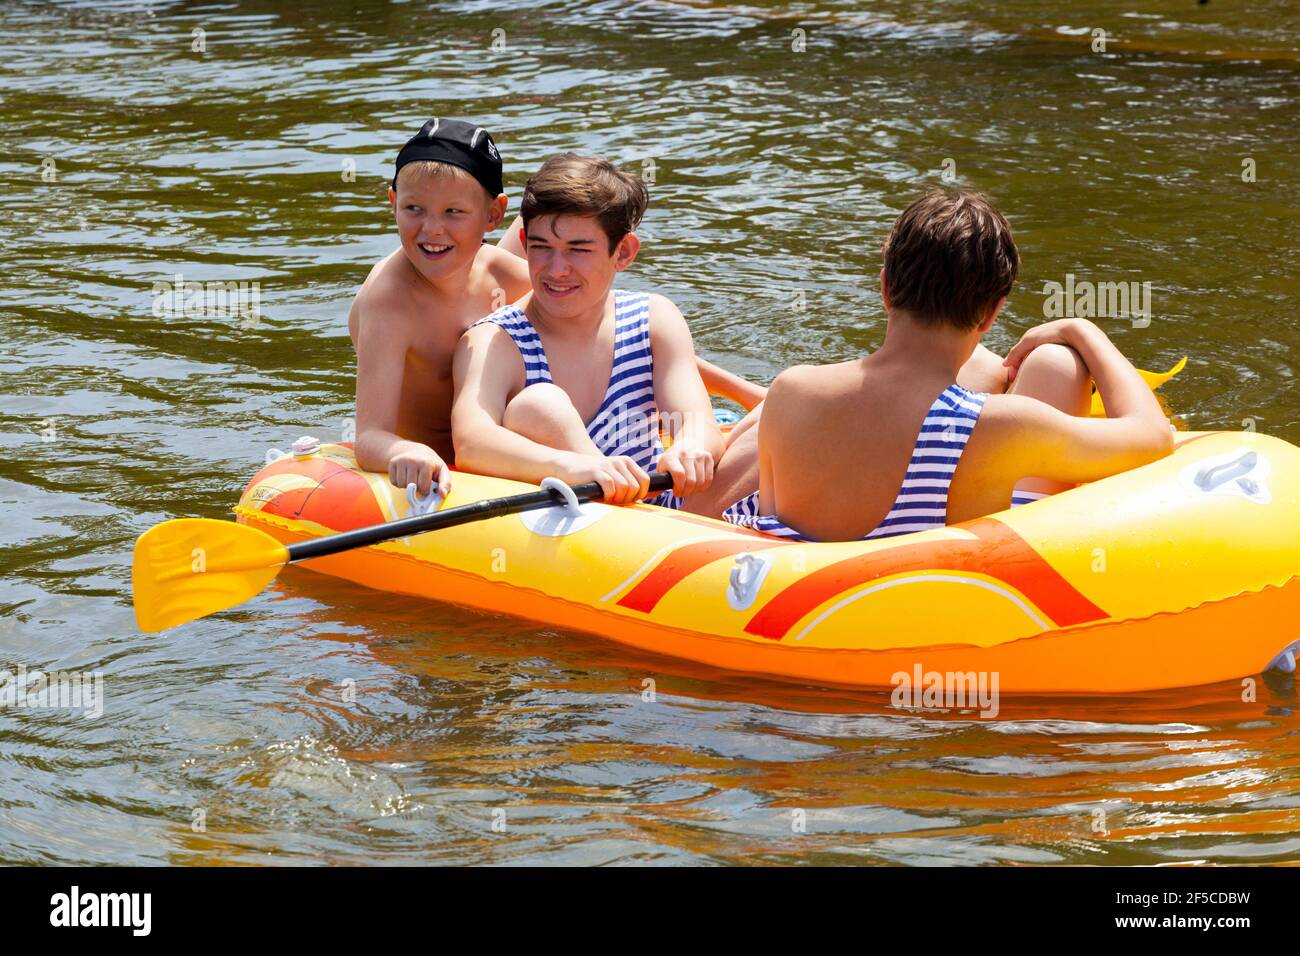 Trois enfants en bateau gonflable, les enfants profitent d'aventures estivales sur l'eau Banque D'Images